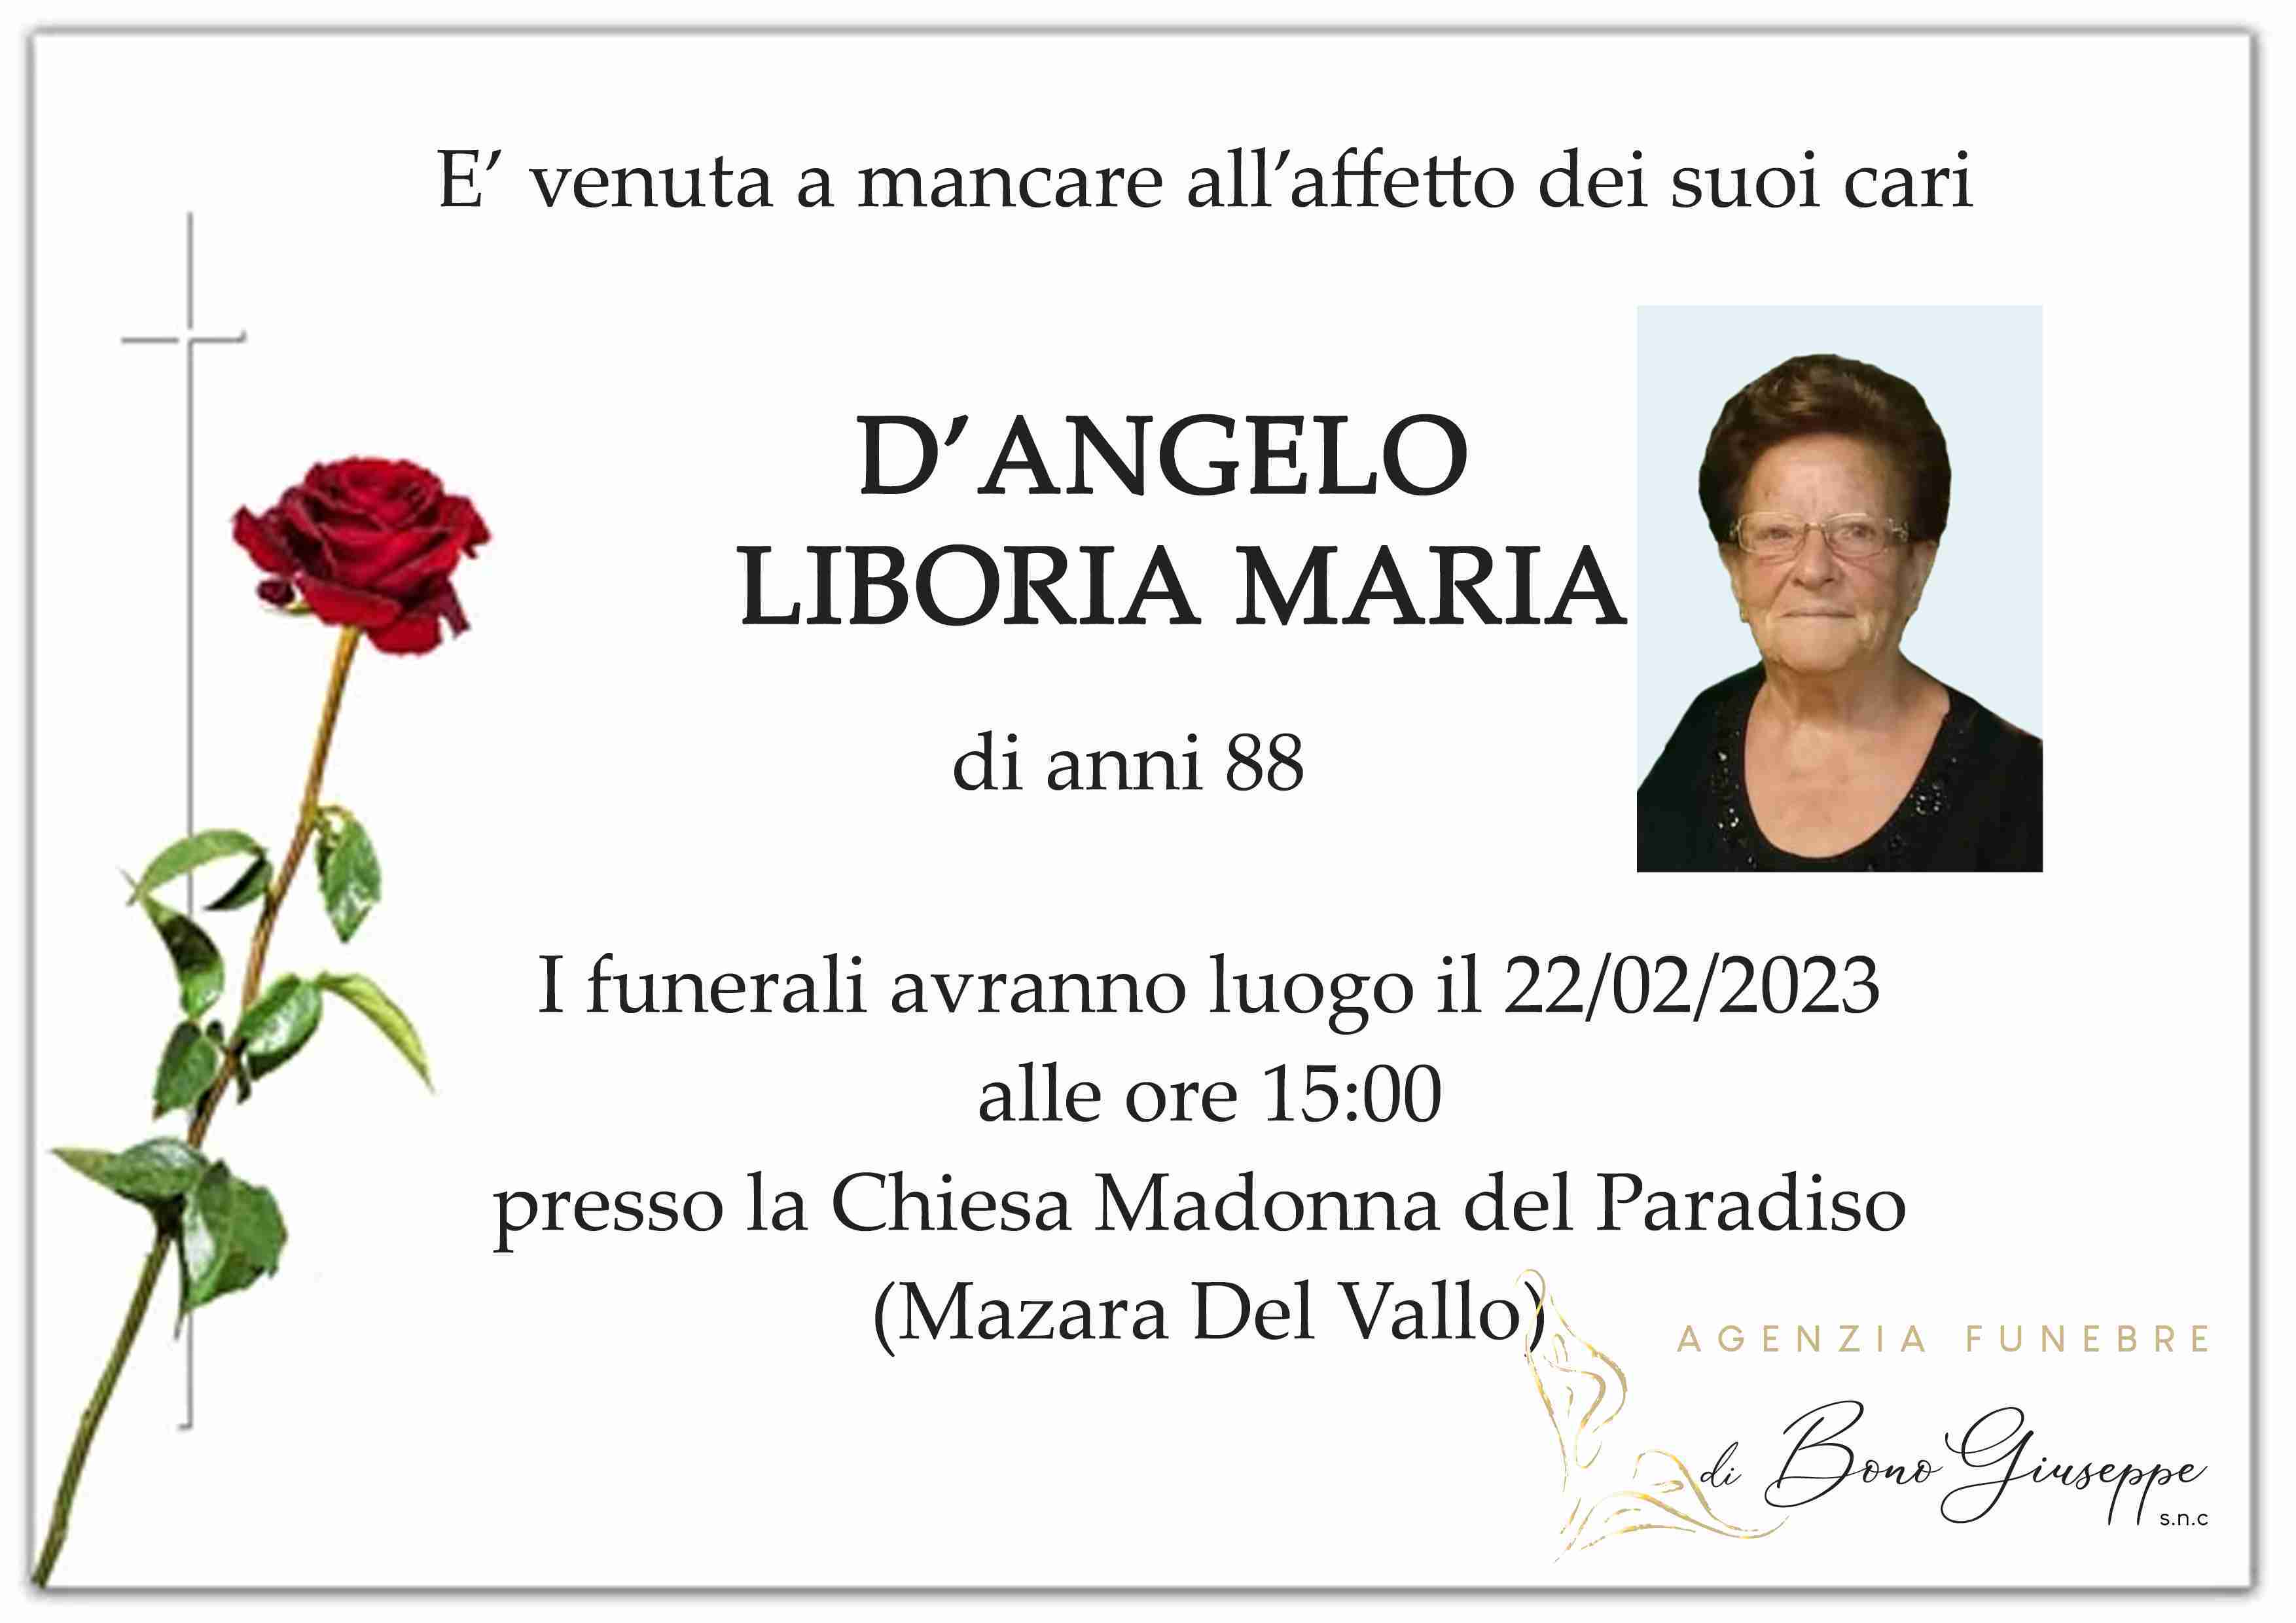 Liboria Maria D'Angelo